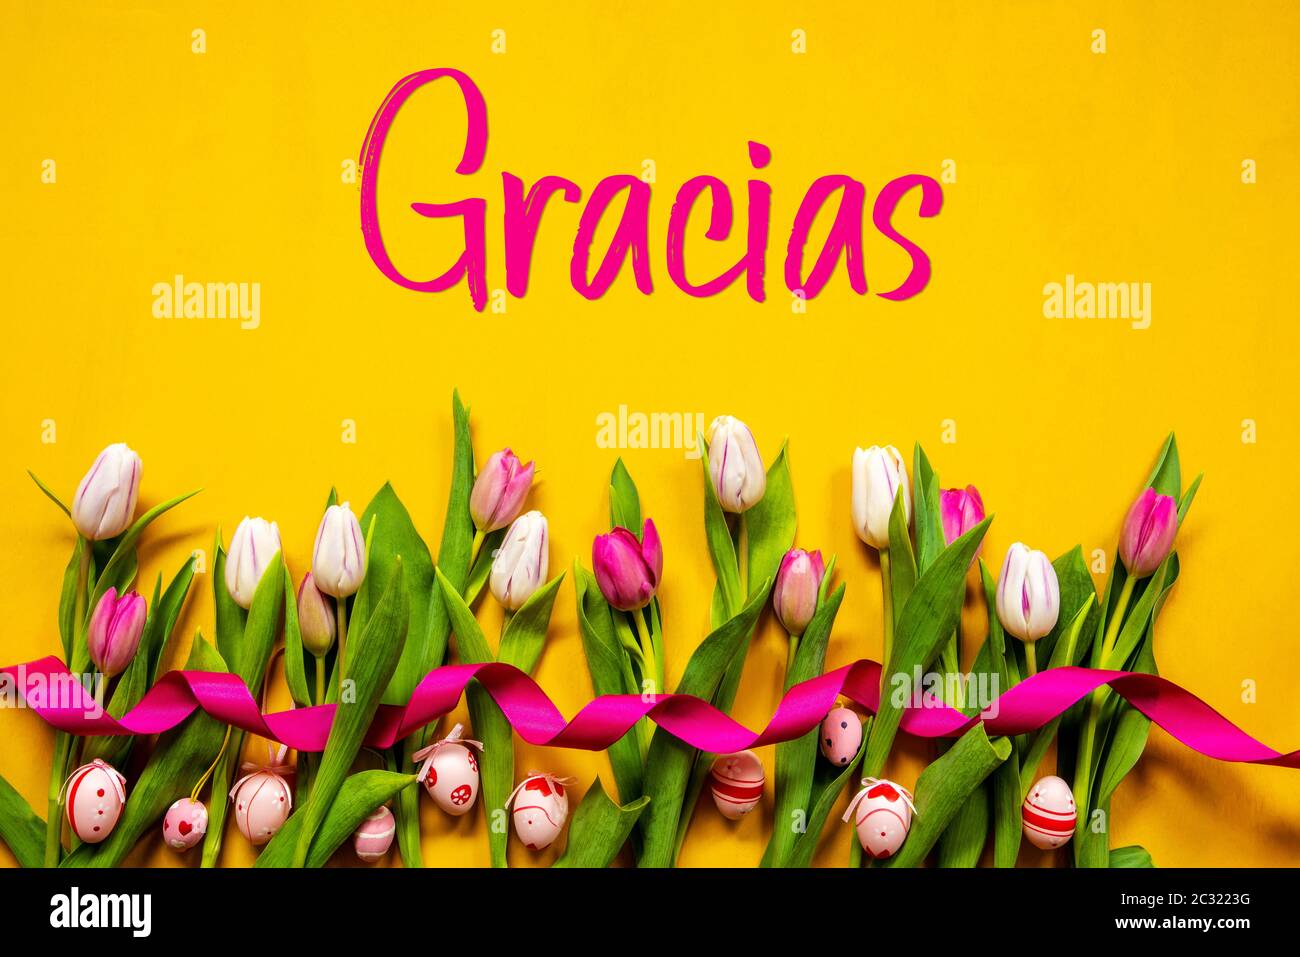 Texte espagnol Gracias signifie Merci. Fleurs de printemps de tulipe blanches et roses avec ruban et décoration d'œuf de Pâques. Fond en bois jaune Banque D'Images